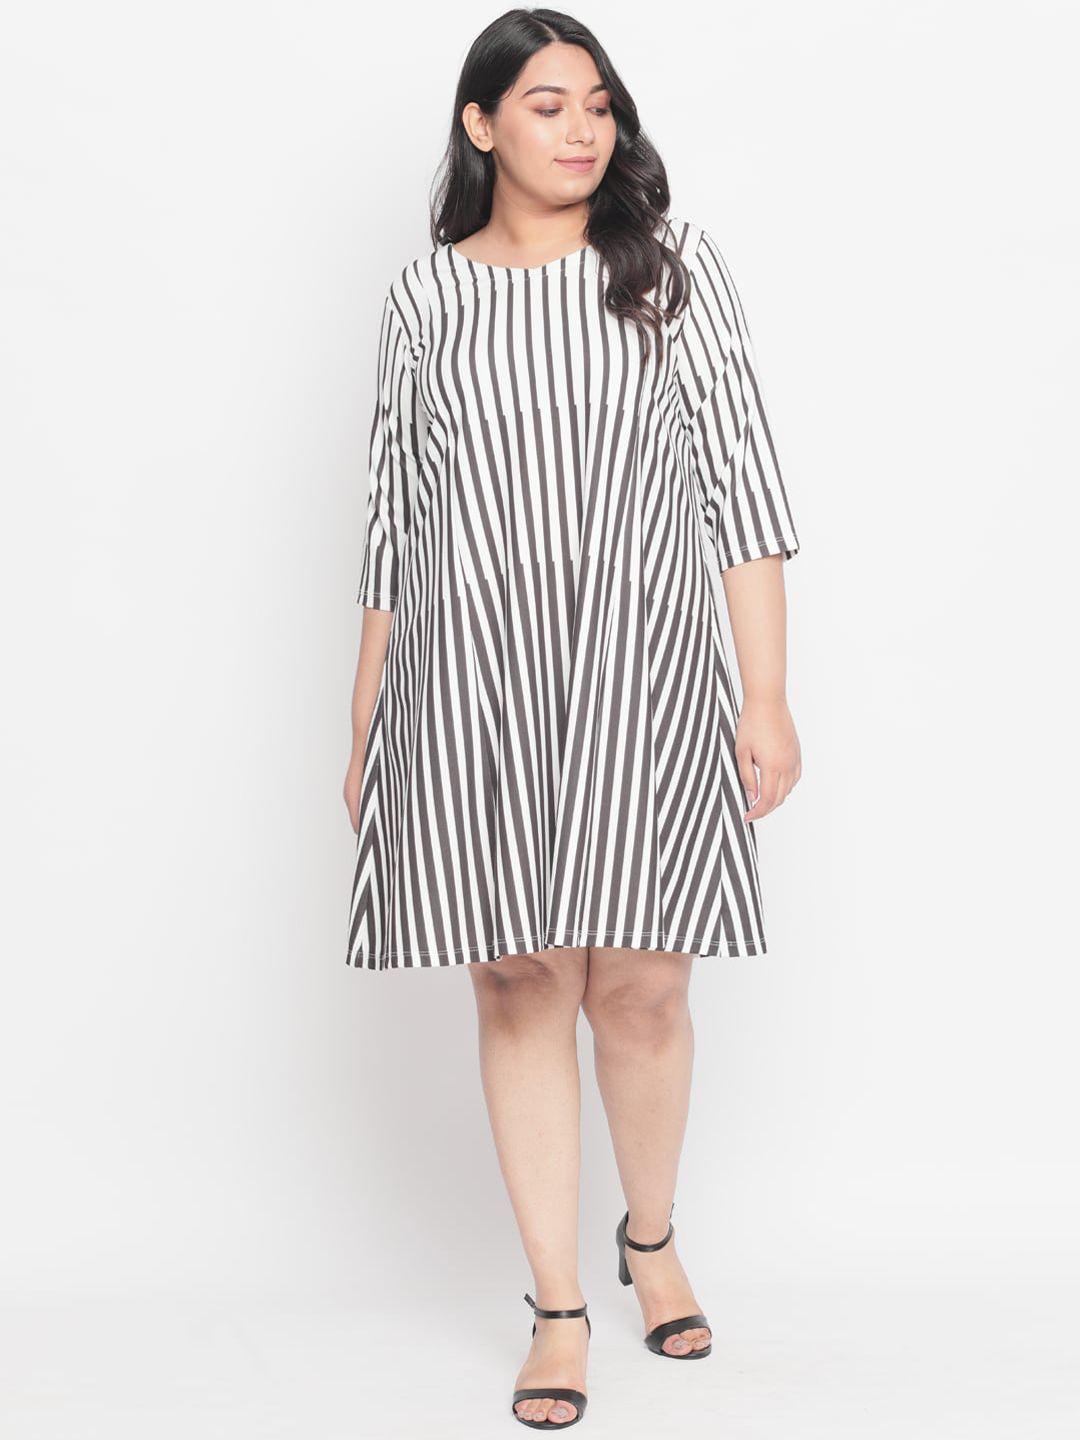 amydus women plus size white striped a-line dress